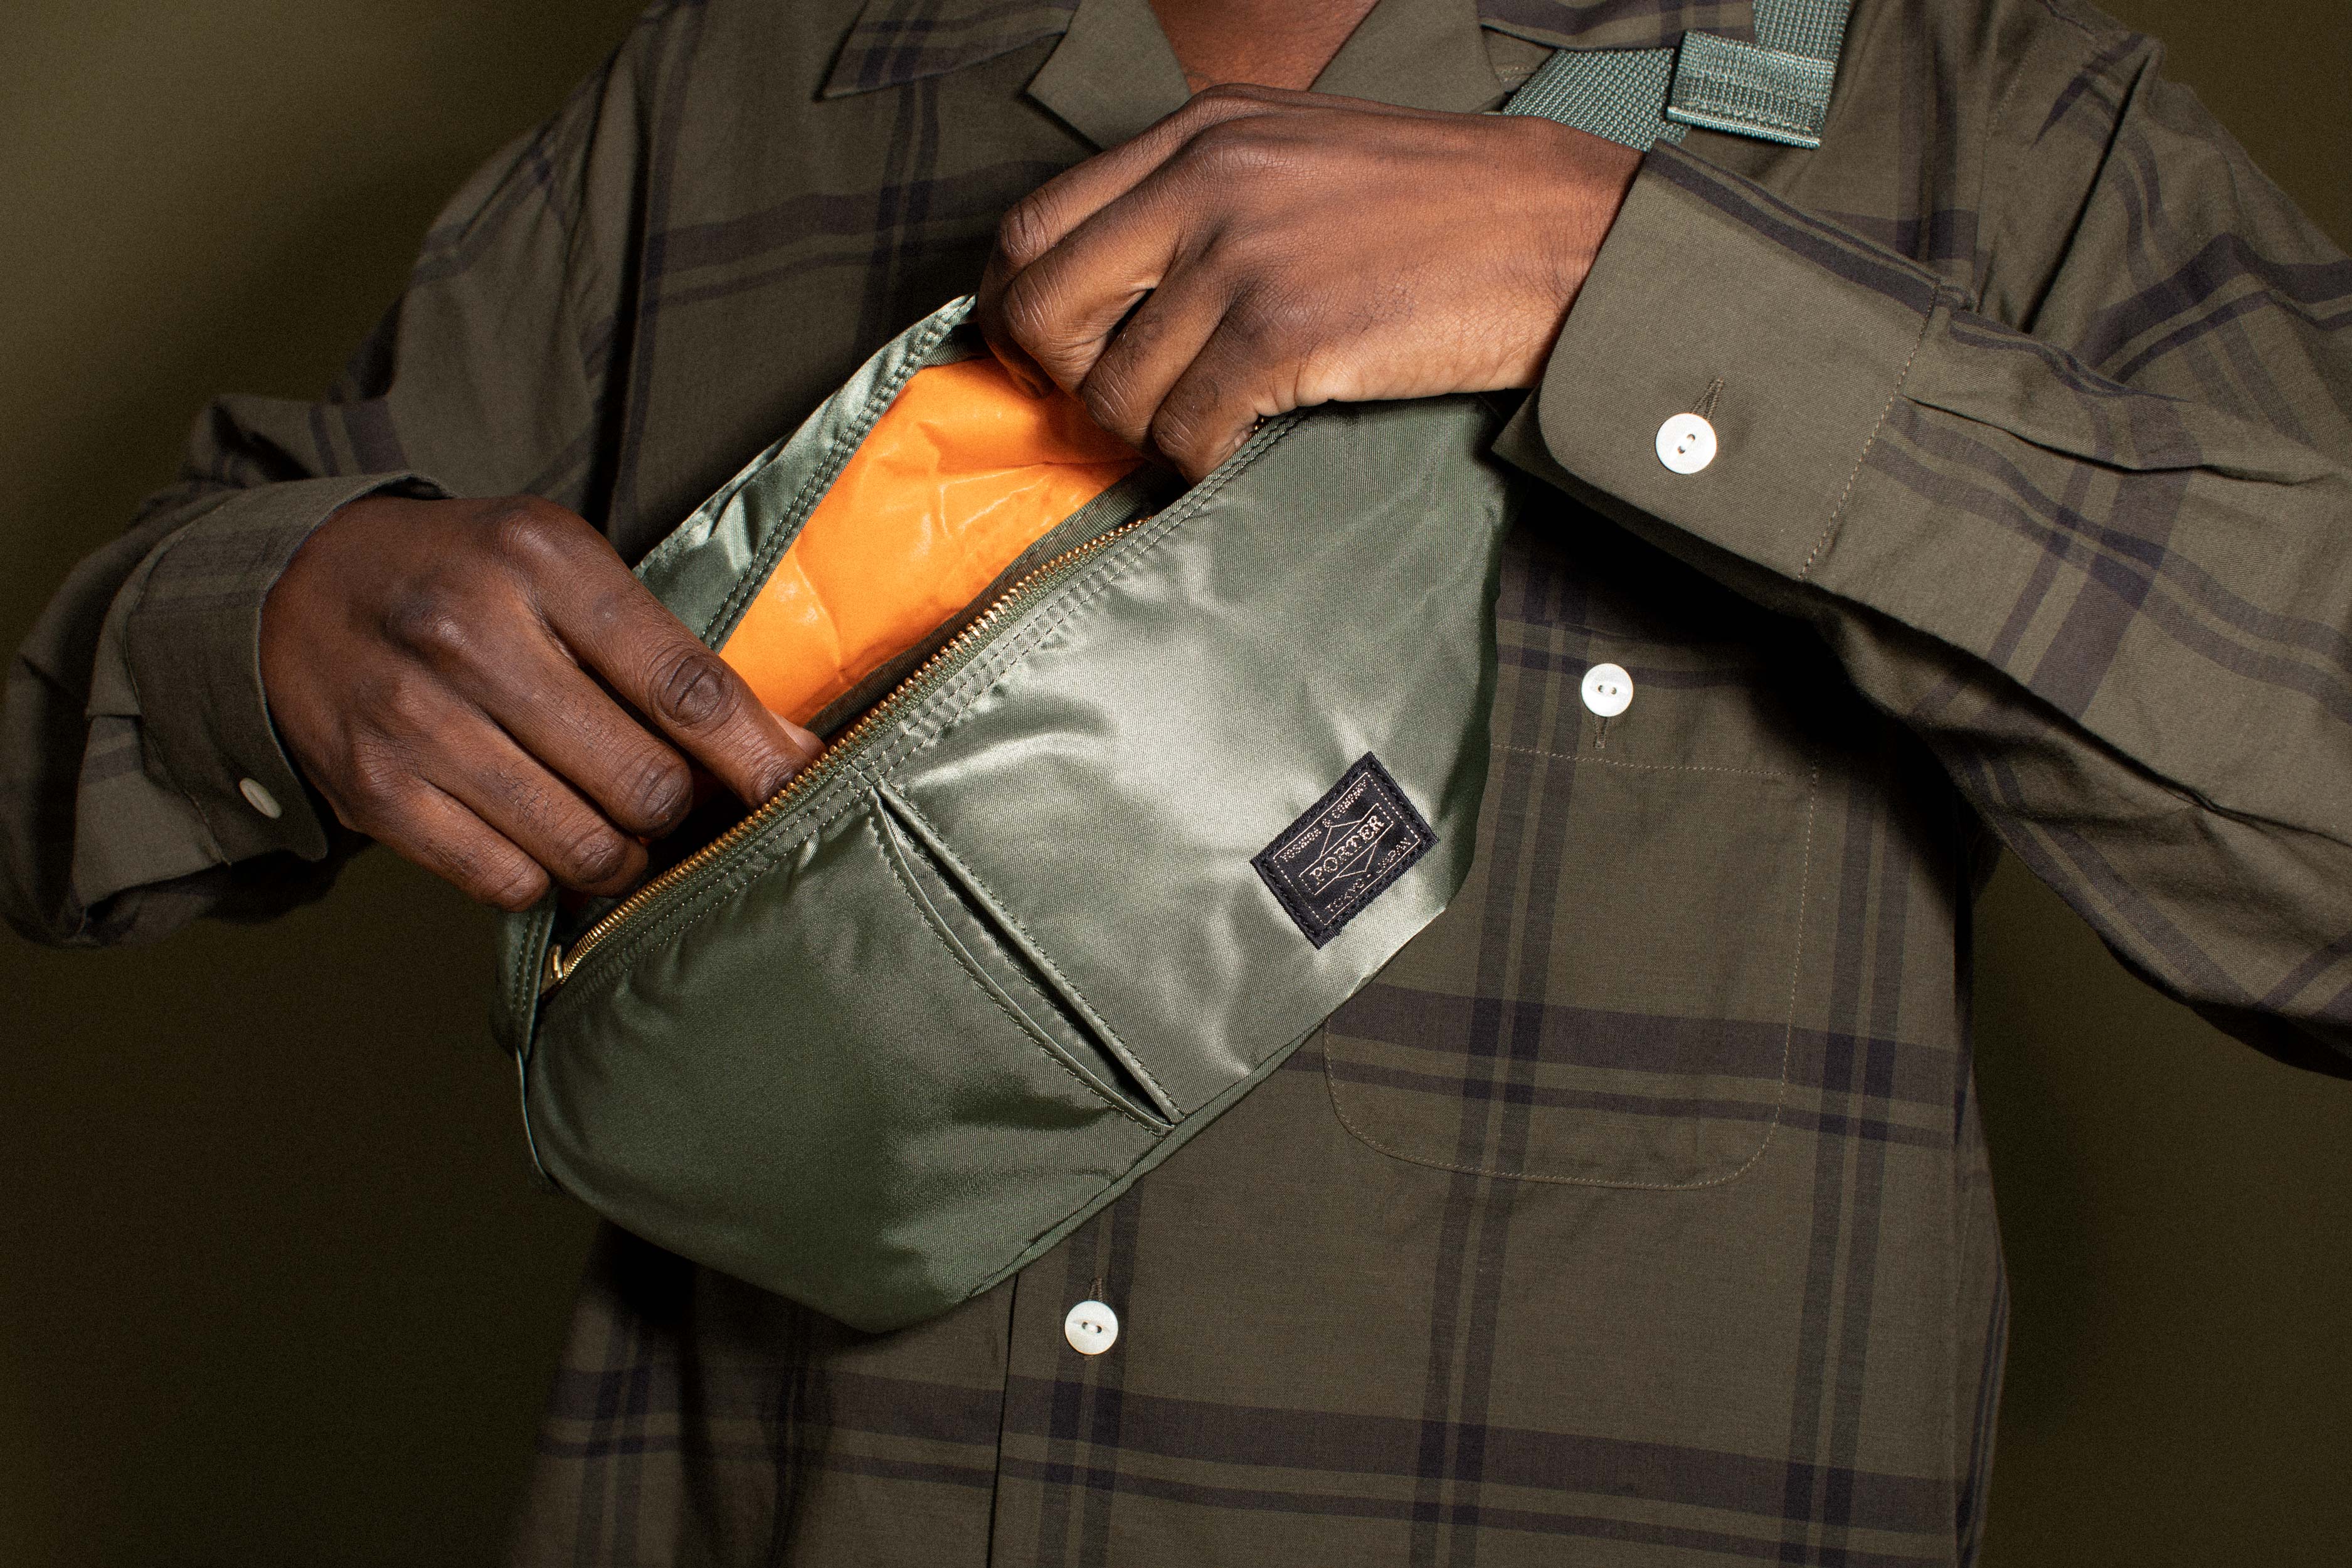 Porter-Yoshida & Co. Tanker Clip Shoulder Bag